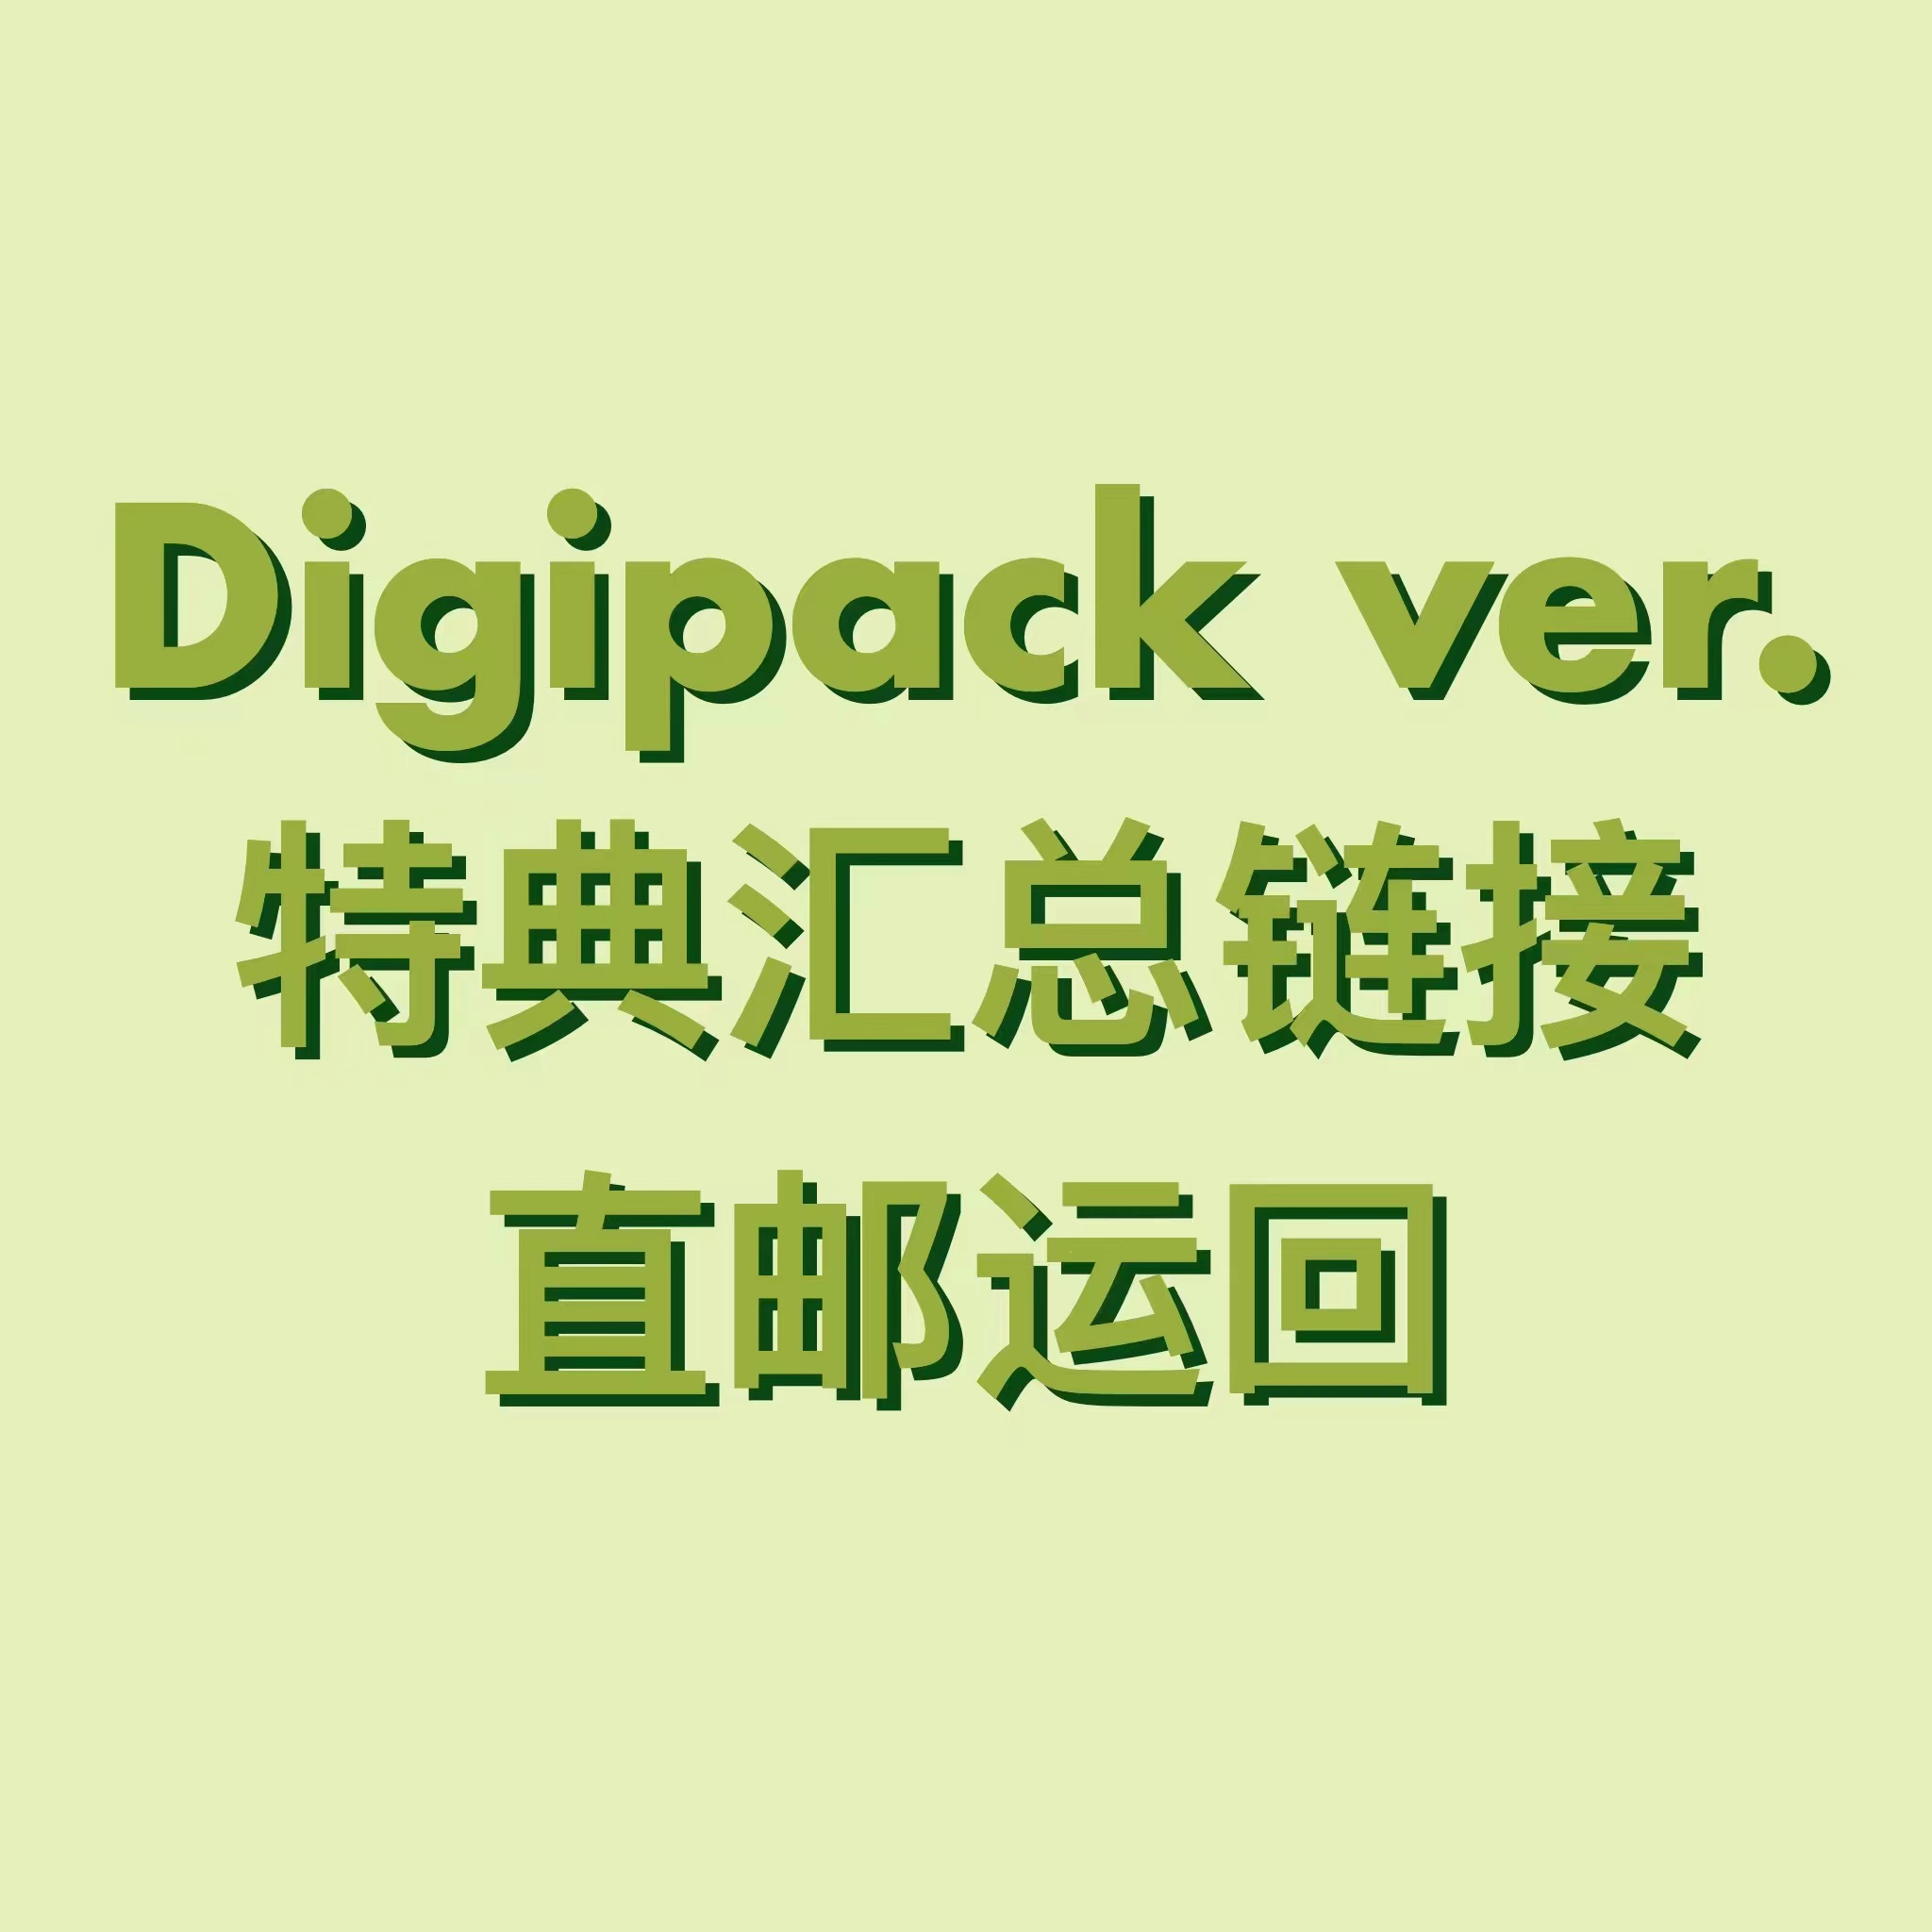 [全款 特典汇总连接] NCT DREAM - 正规2辑 [Glitch Mode] (Digipack Ver.) (随机版本)_朴志晟吧_ParkJiSungBar